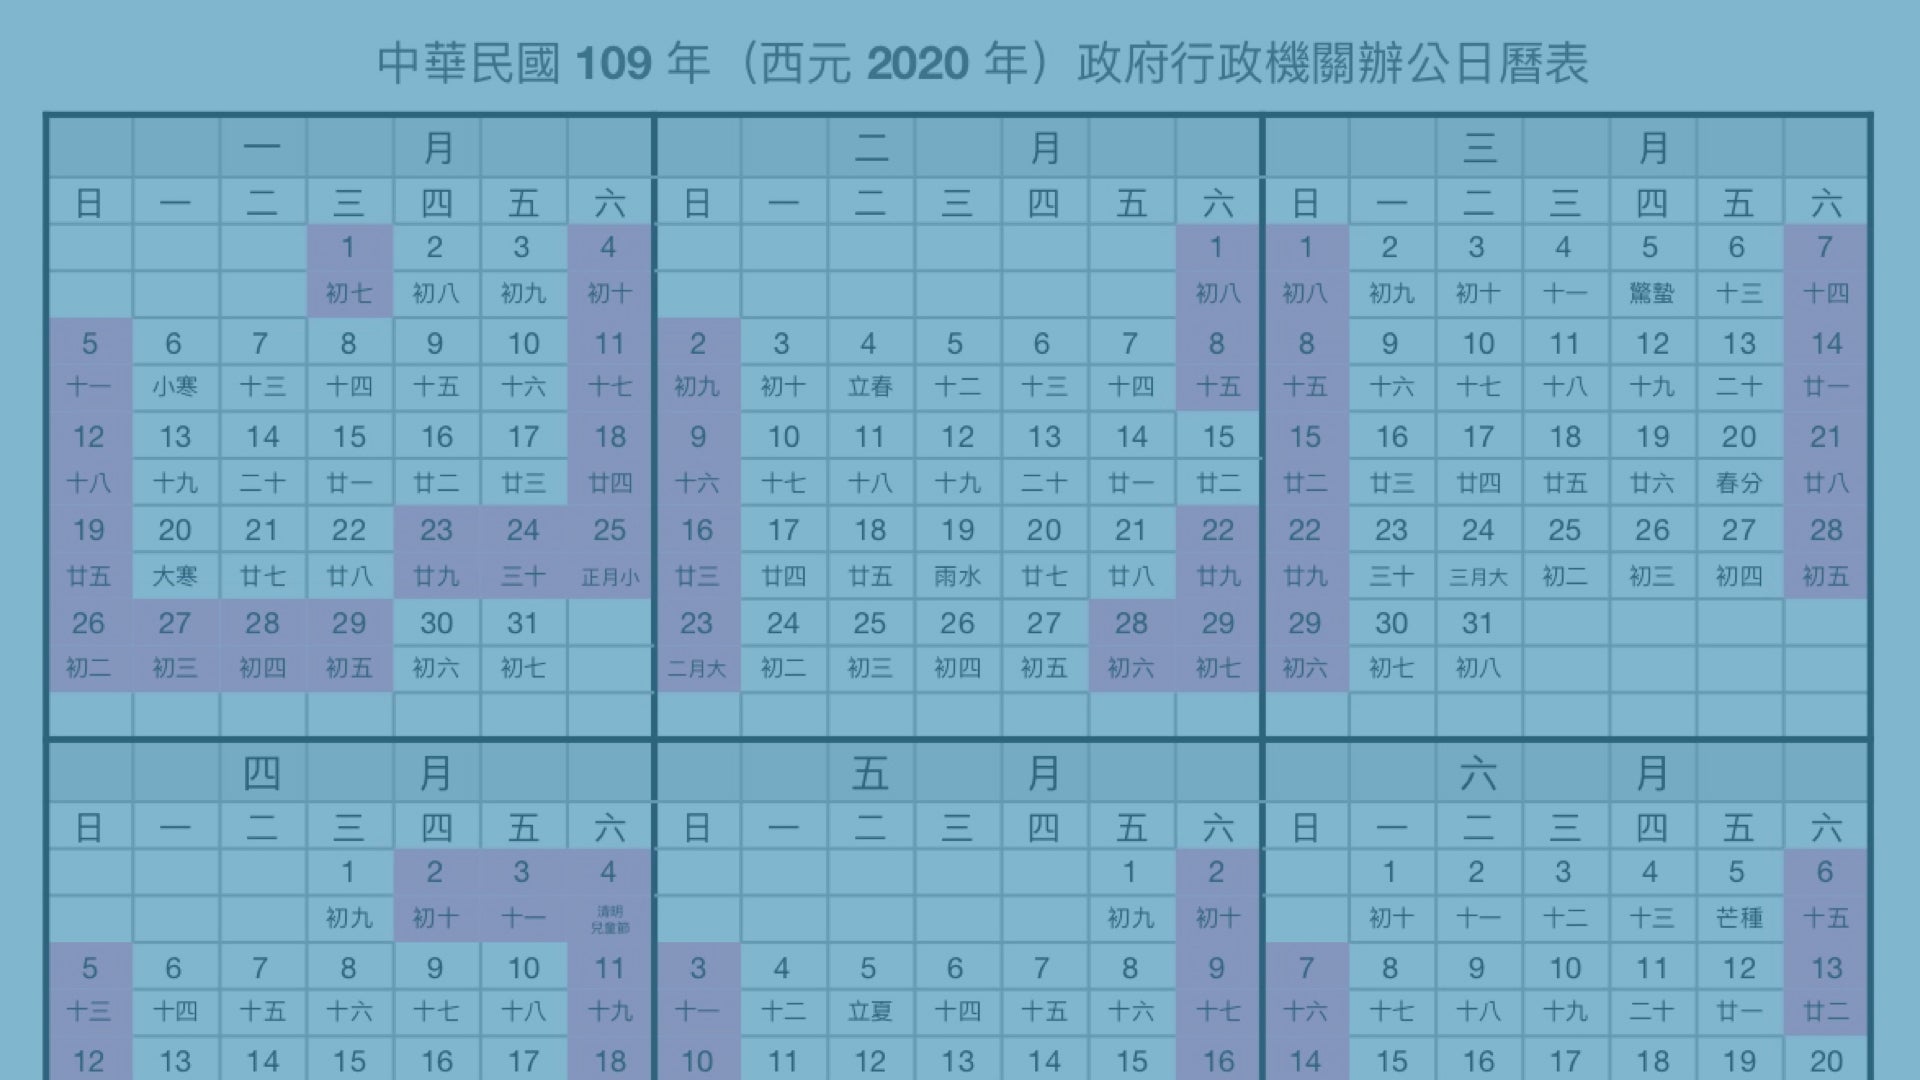 2020 行事曆（人事行政局 109 年行事曆）